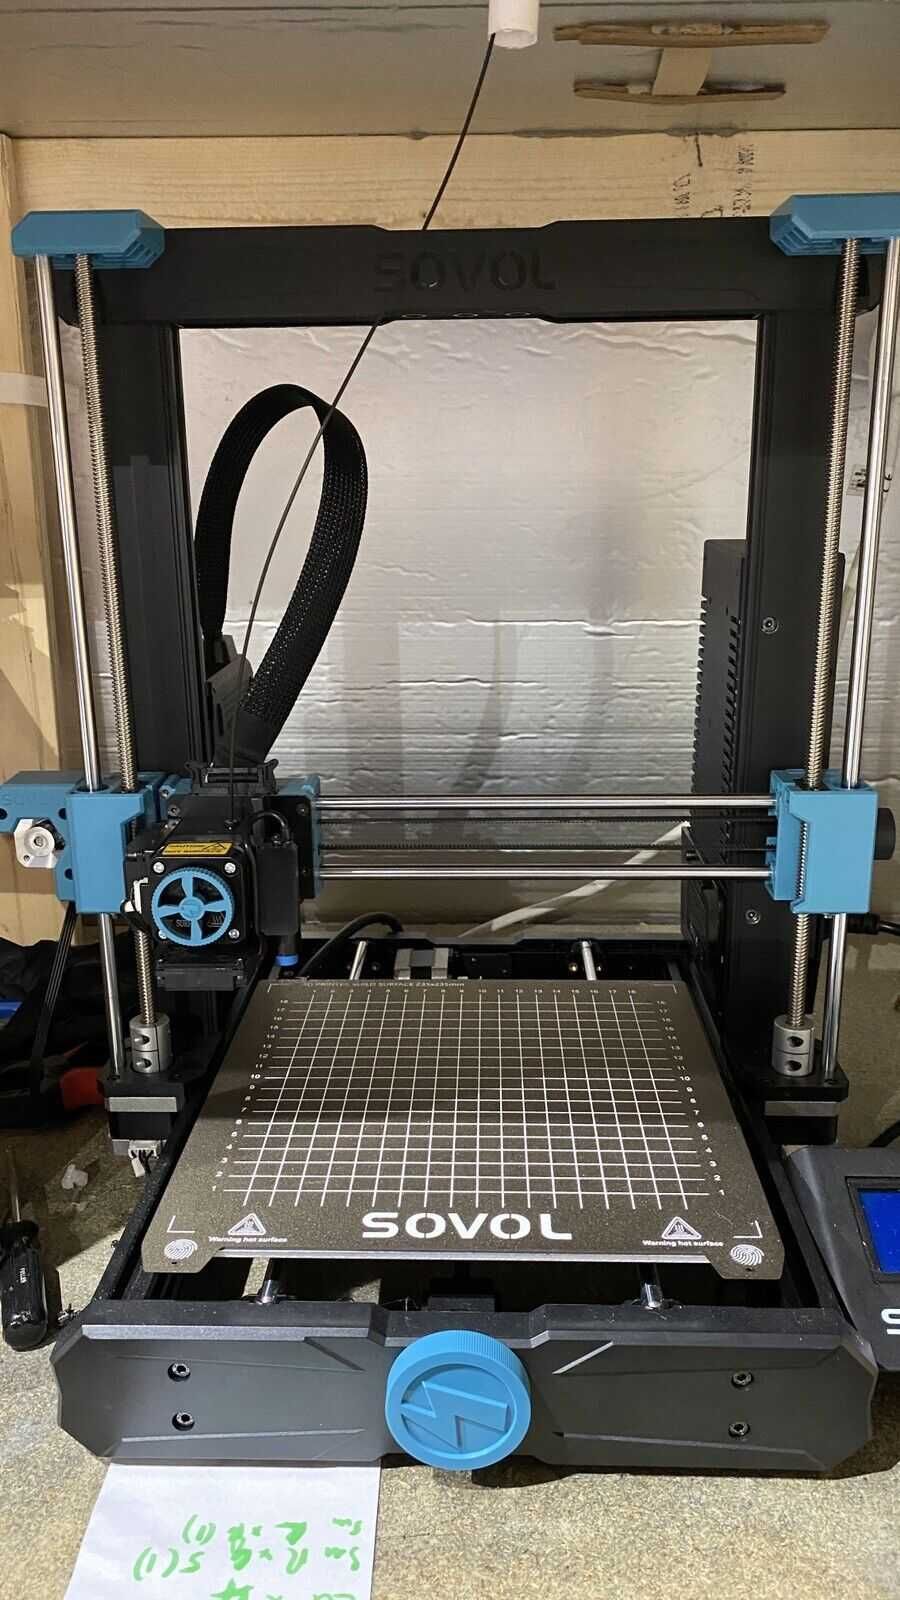 Imprimanta 3D Sovol SV06 / Clona Prusa MK3